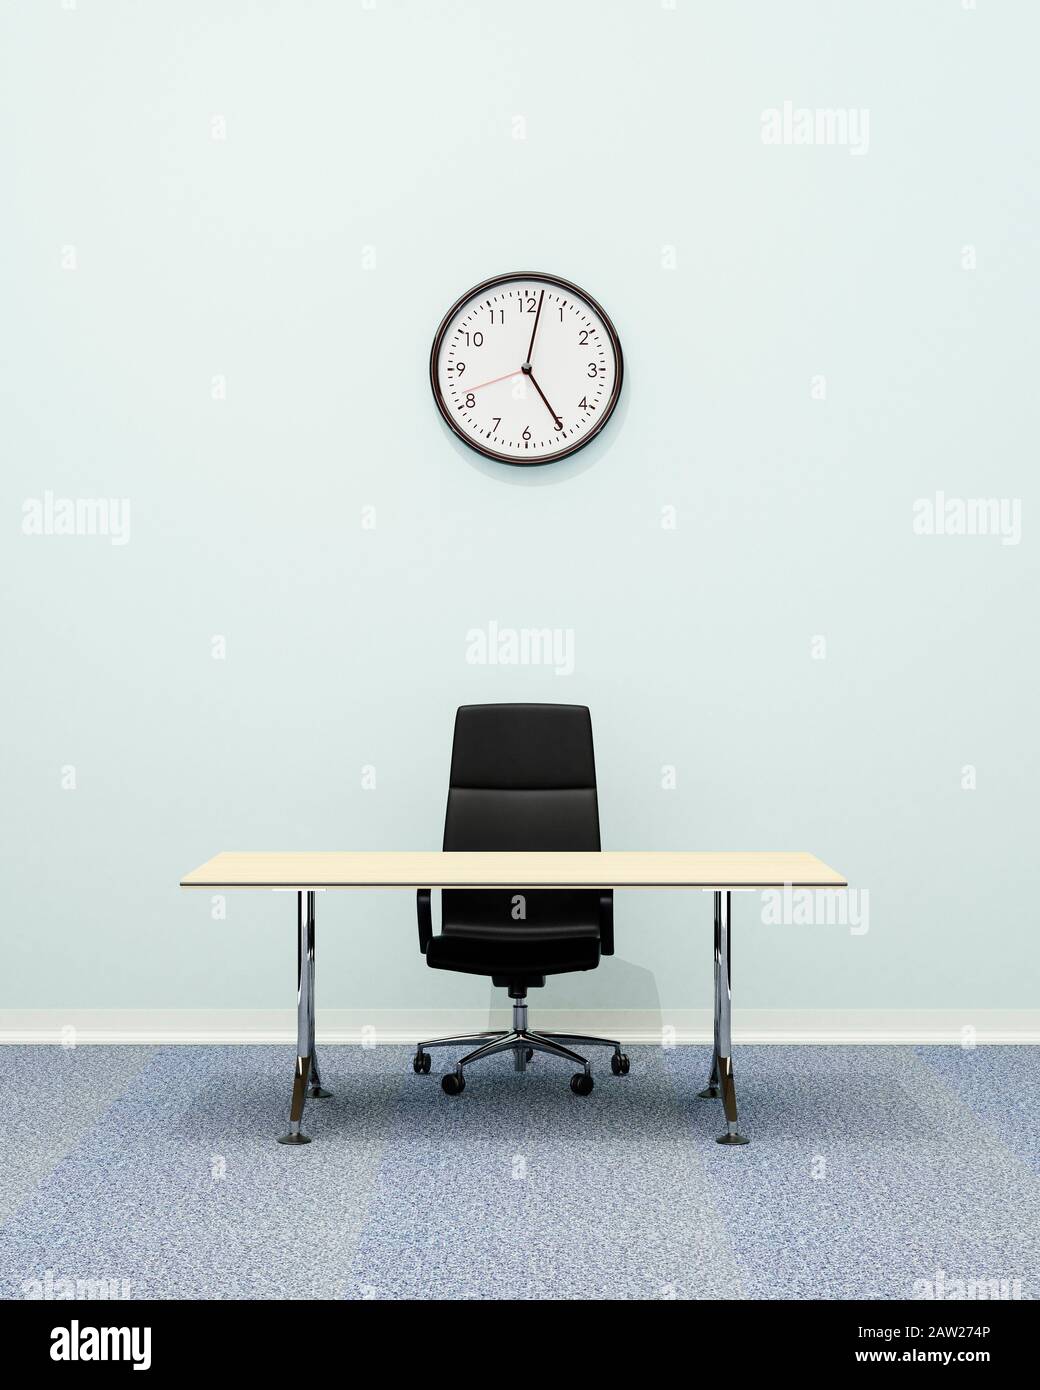 Intérieur de bureau, chaise de bureau en cuir Executive et bureau vide avec horloge murale à 17:00 Banque D'Images